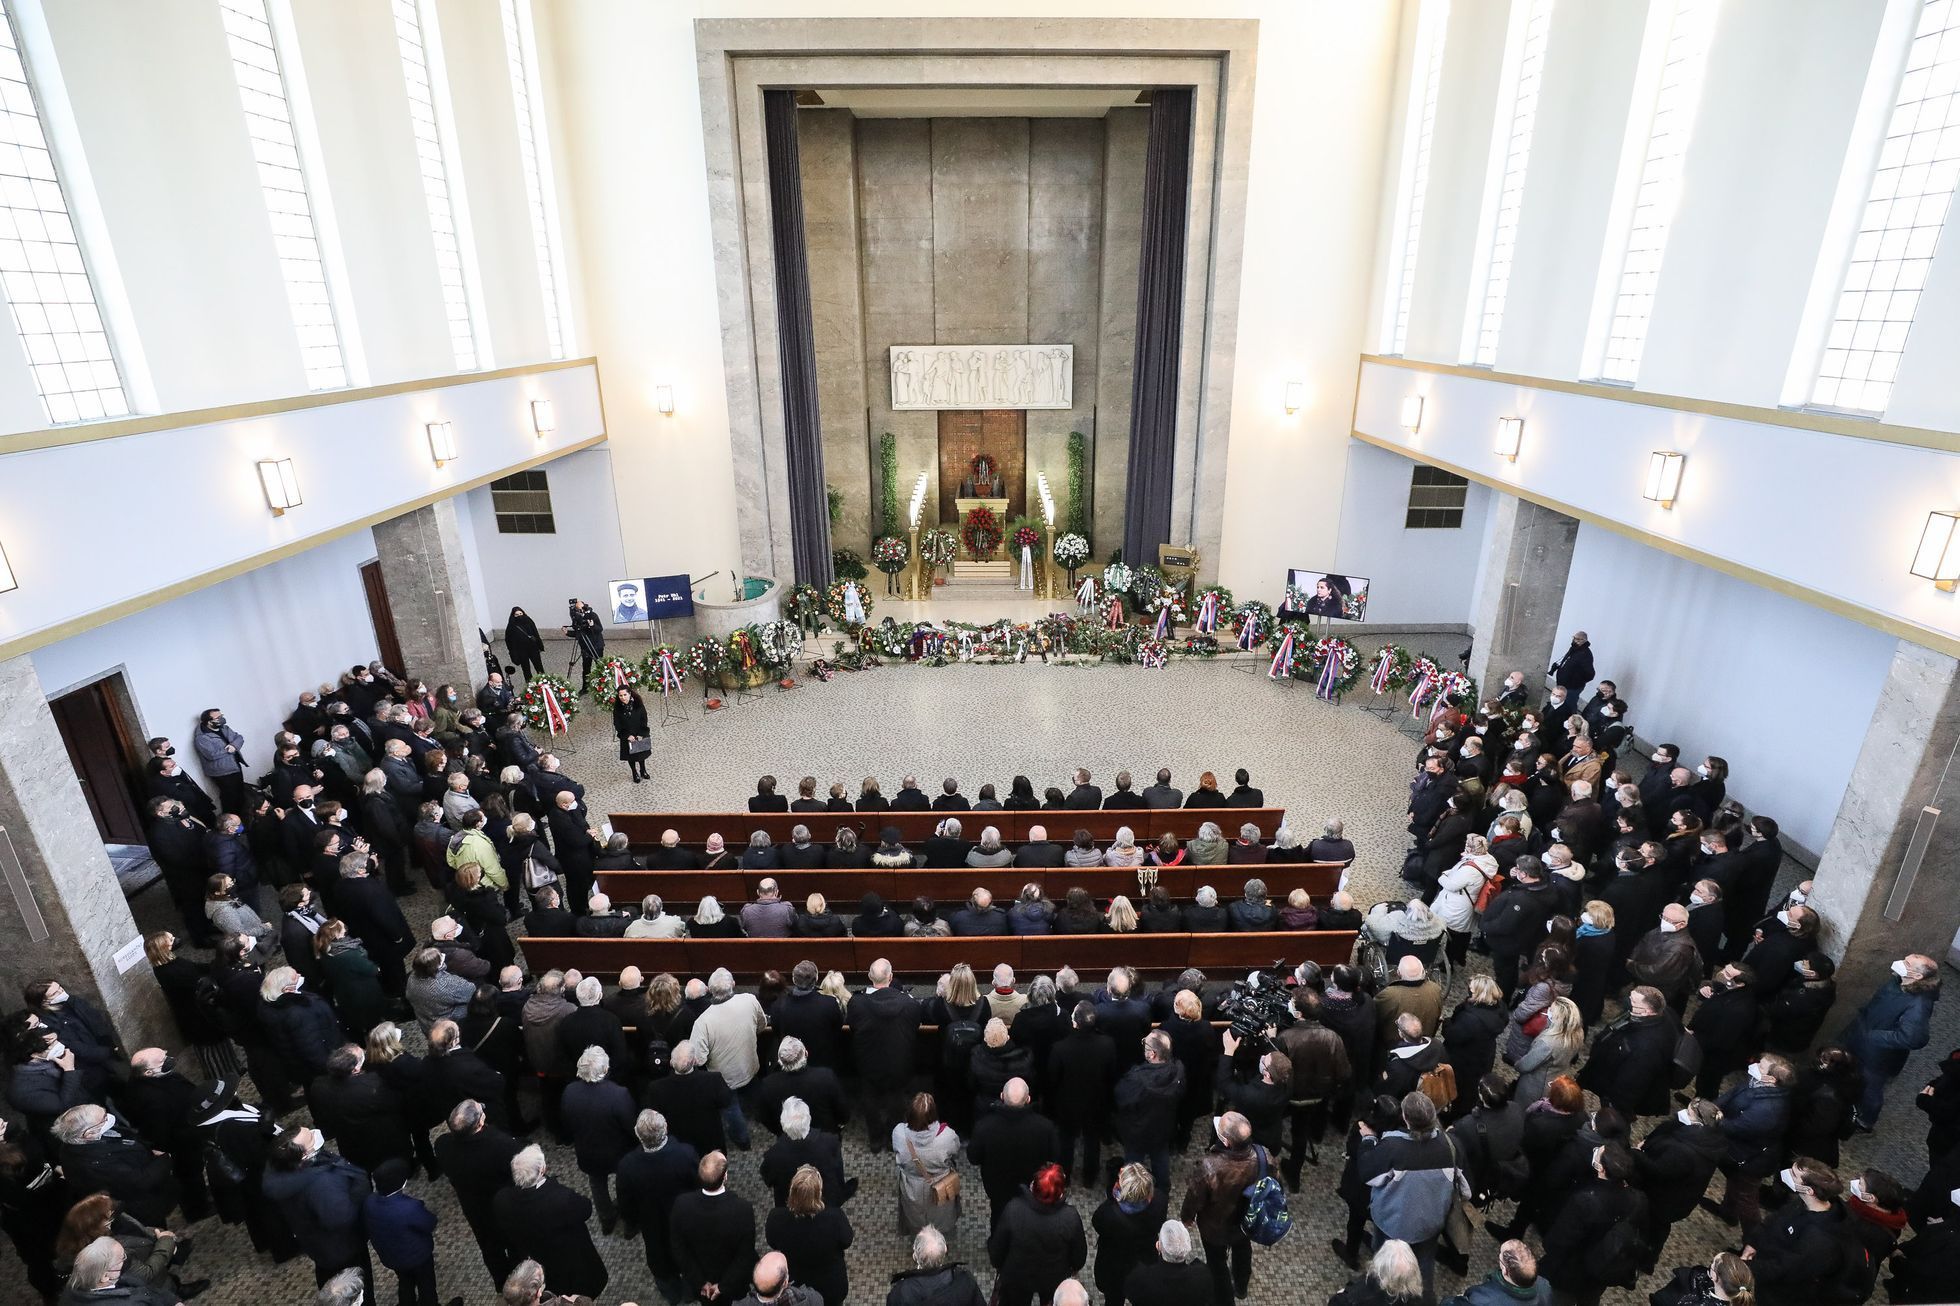 Pohřeb Petr Uhl, poslední rozloučení, krematorium Strašnice, 10. 12. 2021